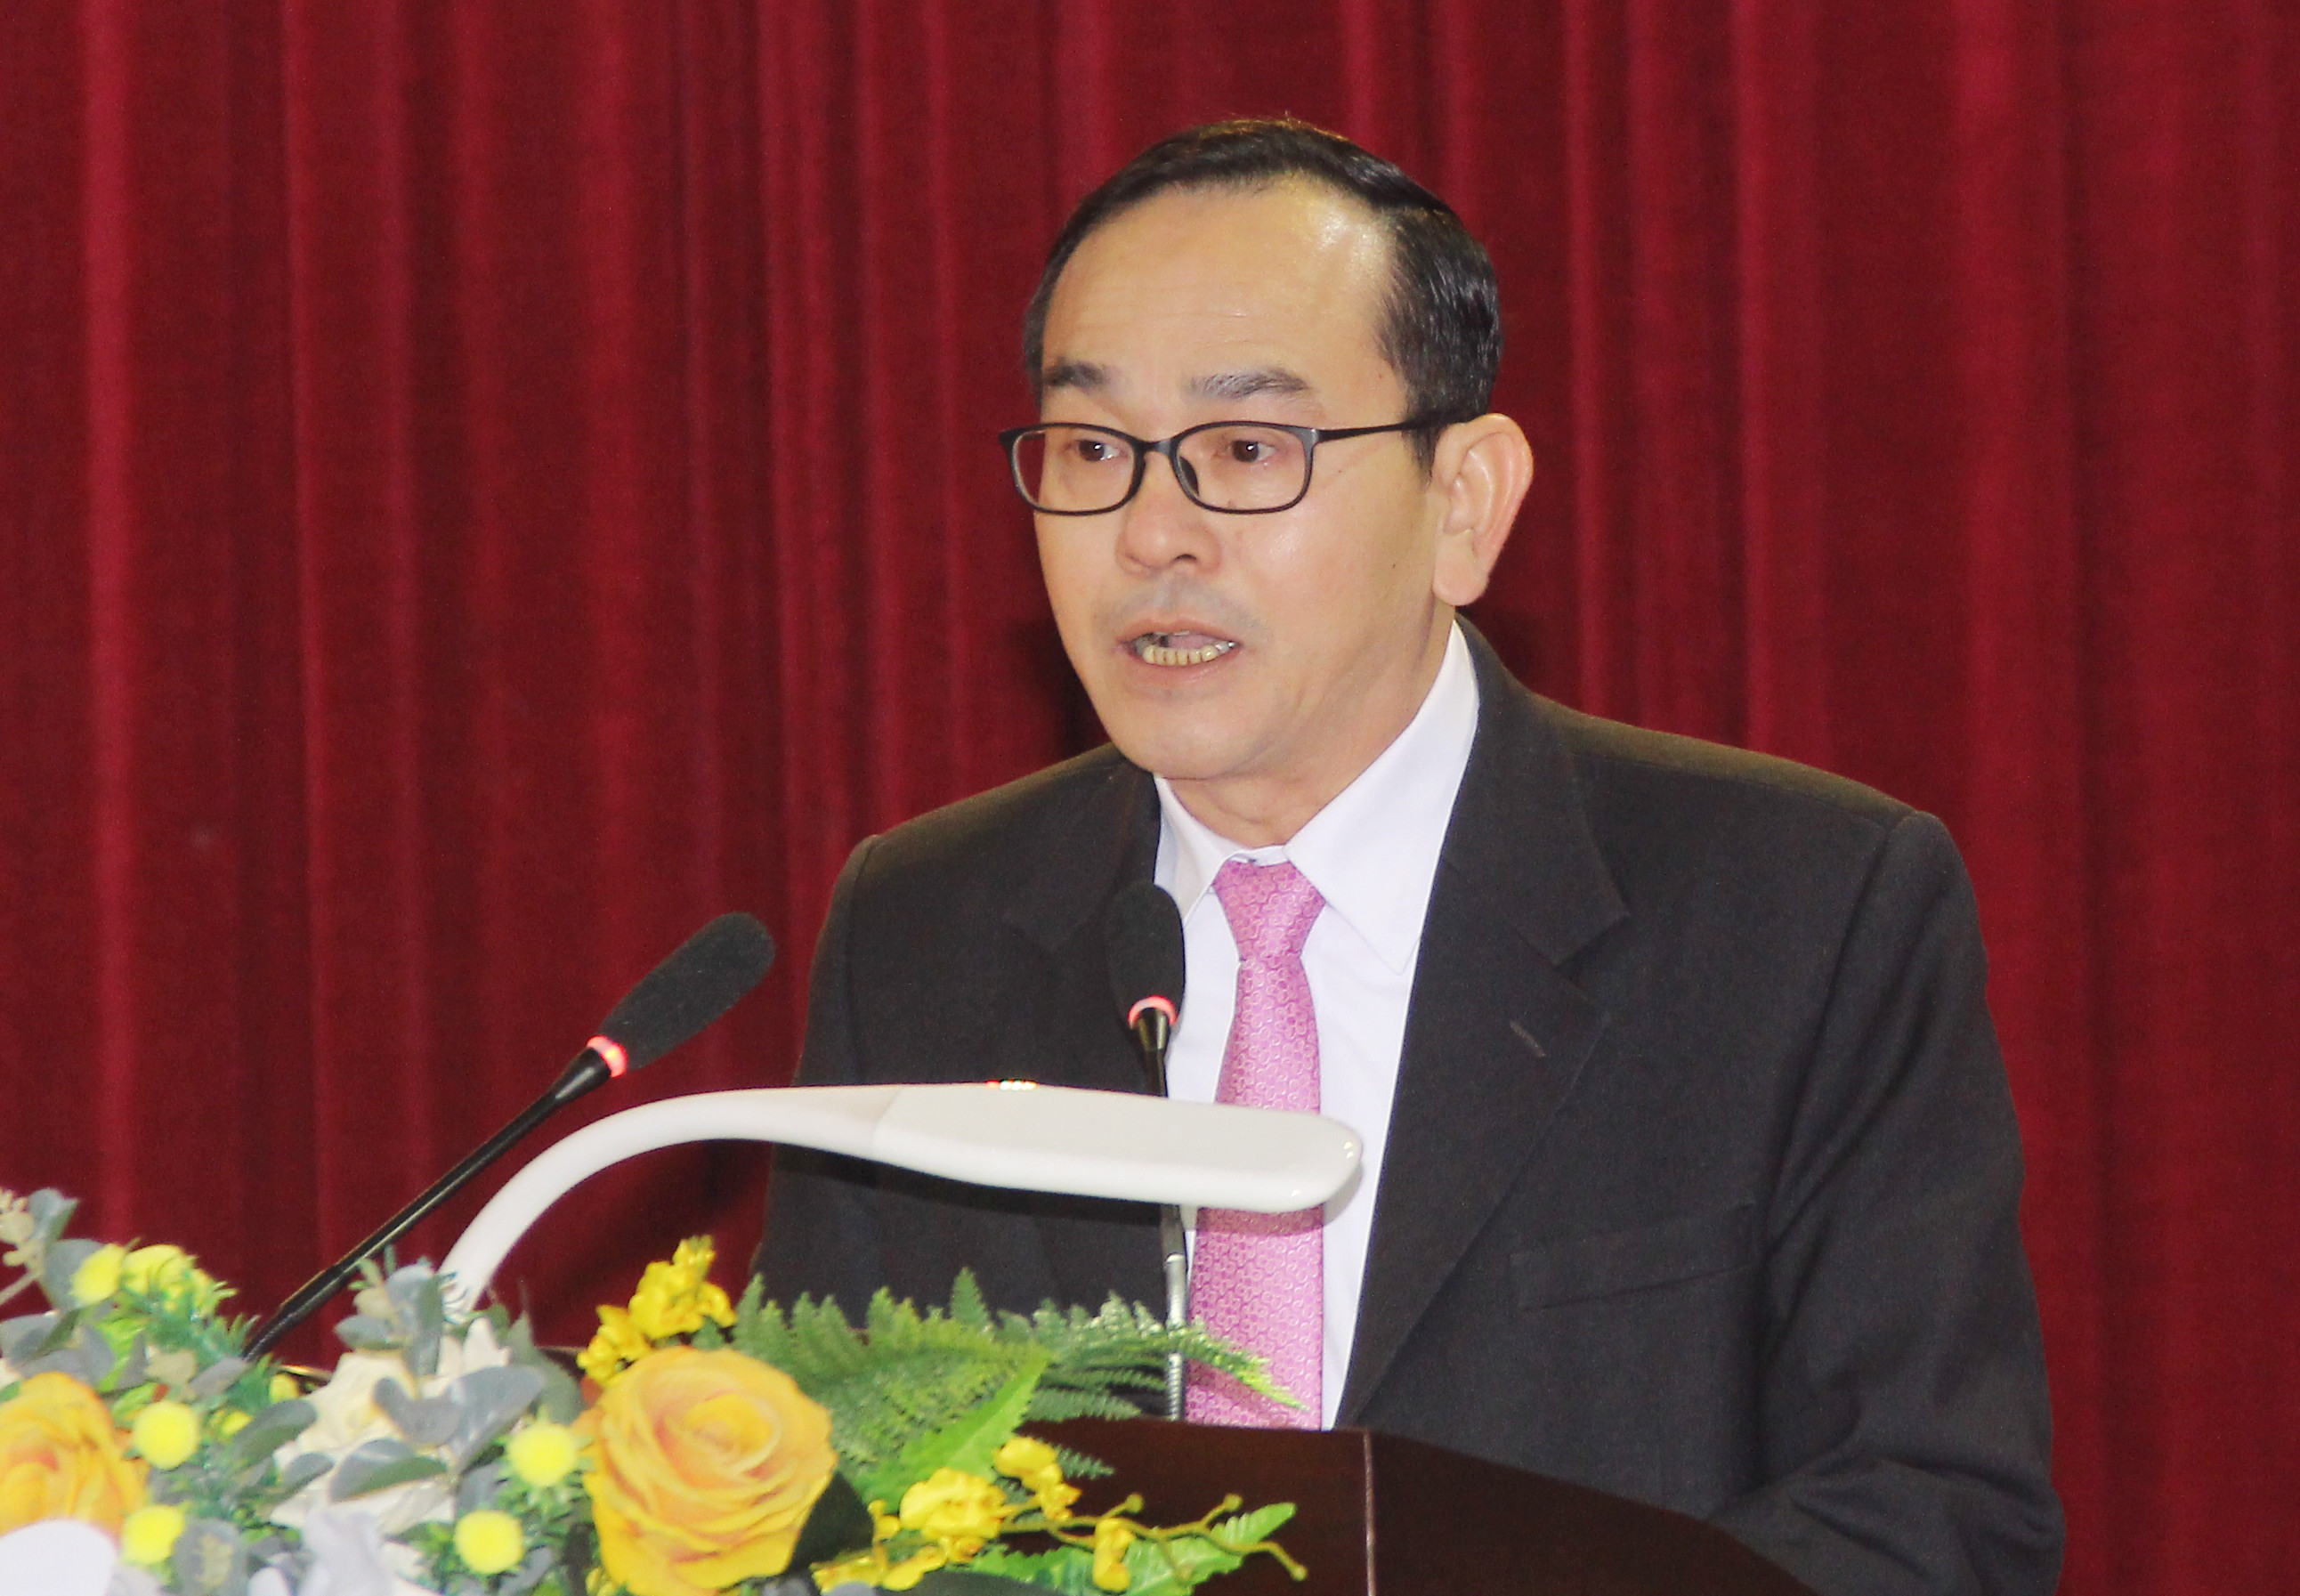 Phó Chủ tịch UBND thành phố Trần Quang Lâm trình bày báo cáo tình hình phát triển kinh tế - xã hội năm 2020 và kế hoạch năm 2021. Ảnh: Mai Hoa